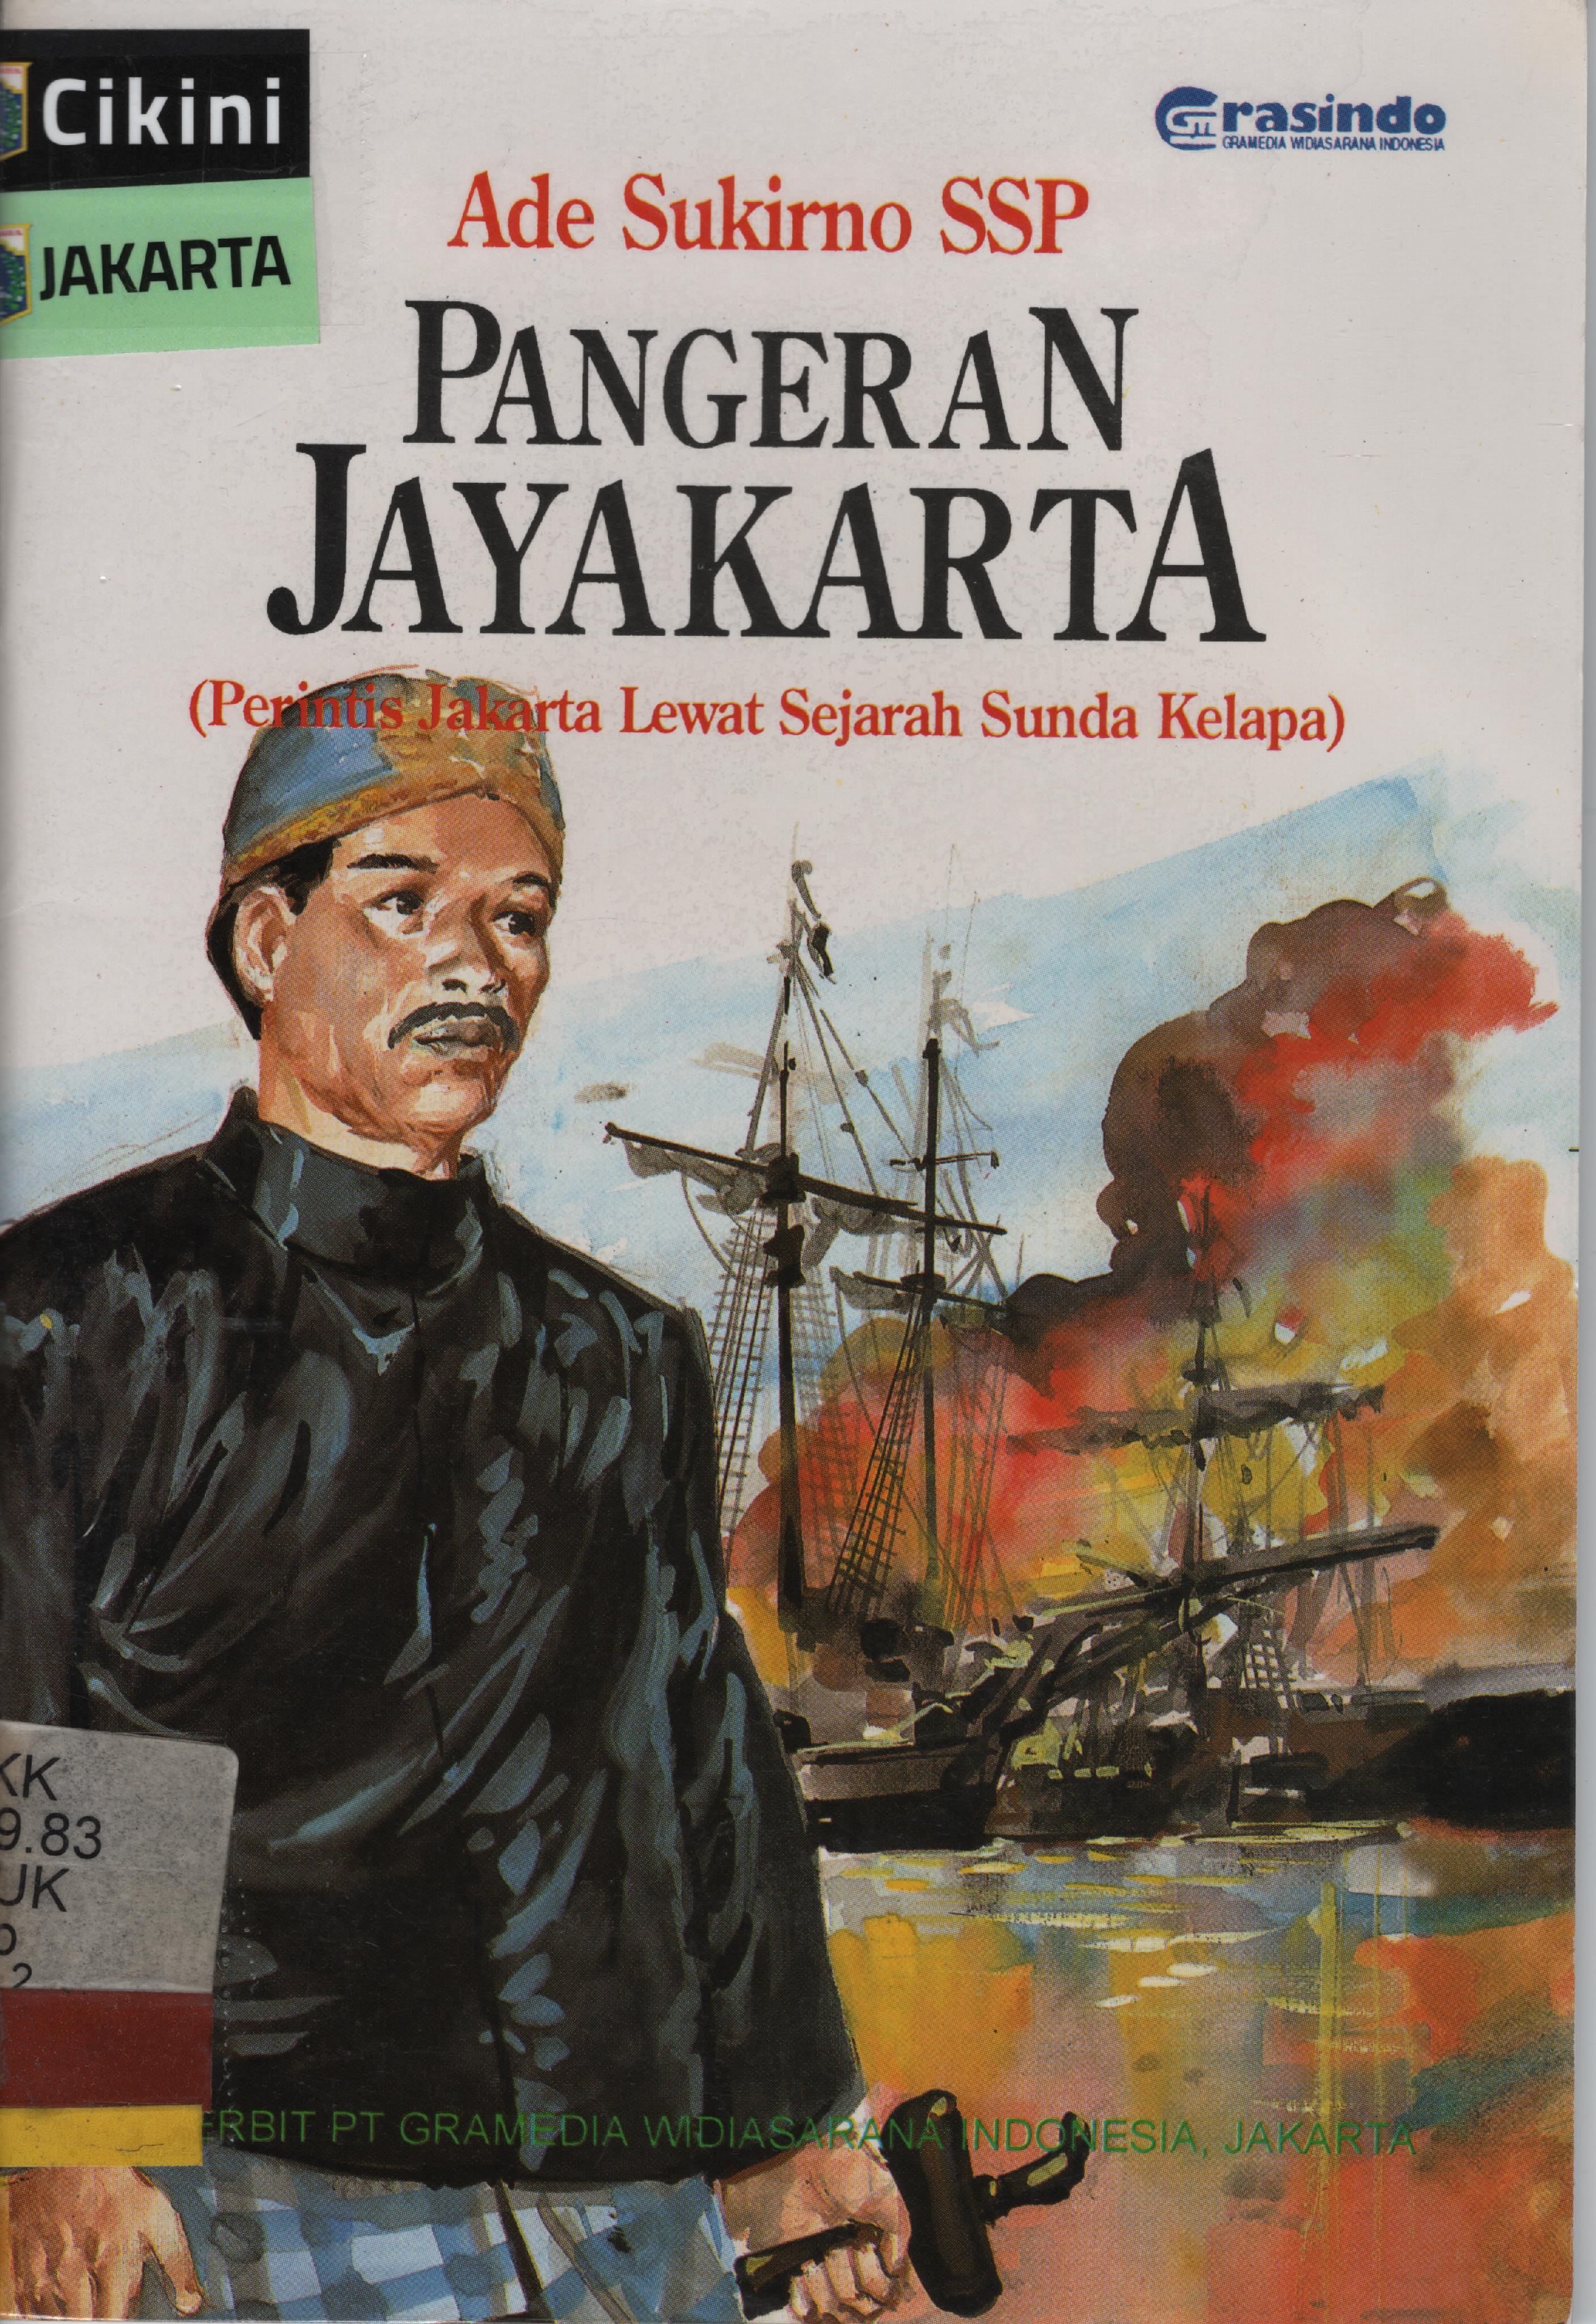 Pangeran Jayakarta :  perintis Jakarta lewat sejarah Sunda Kelapa